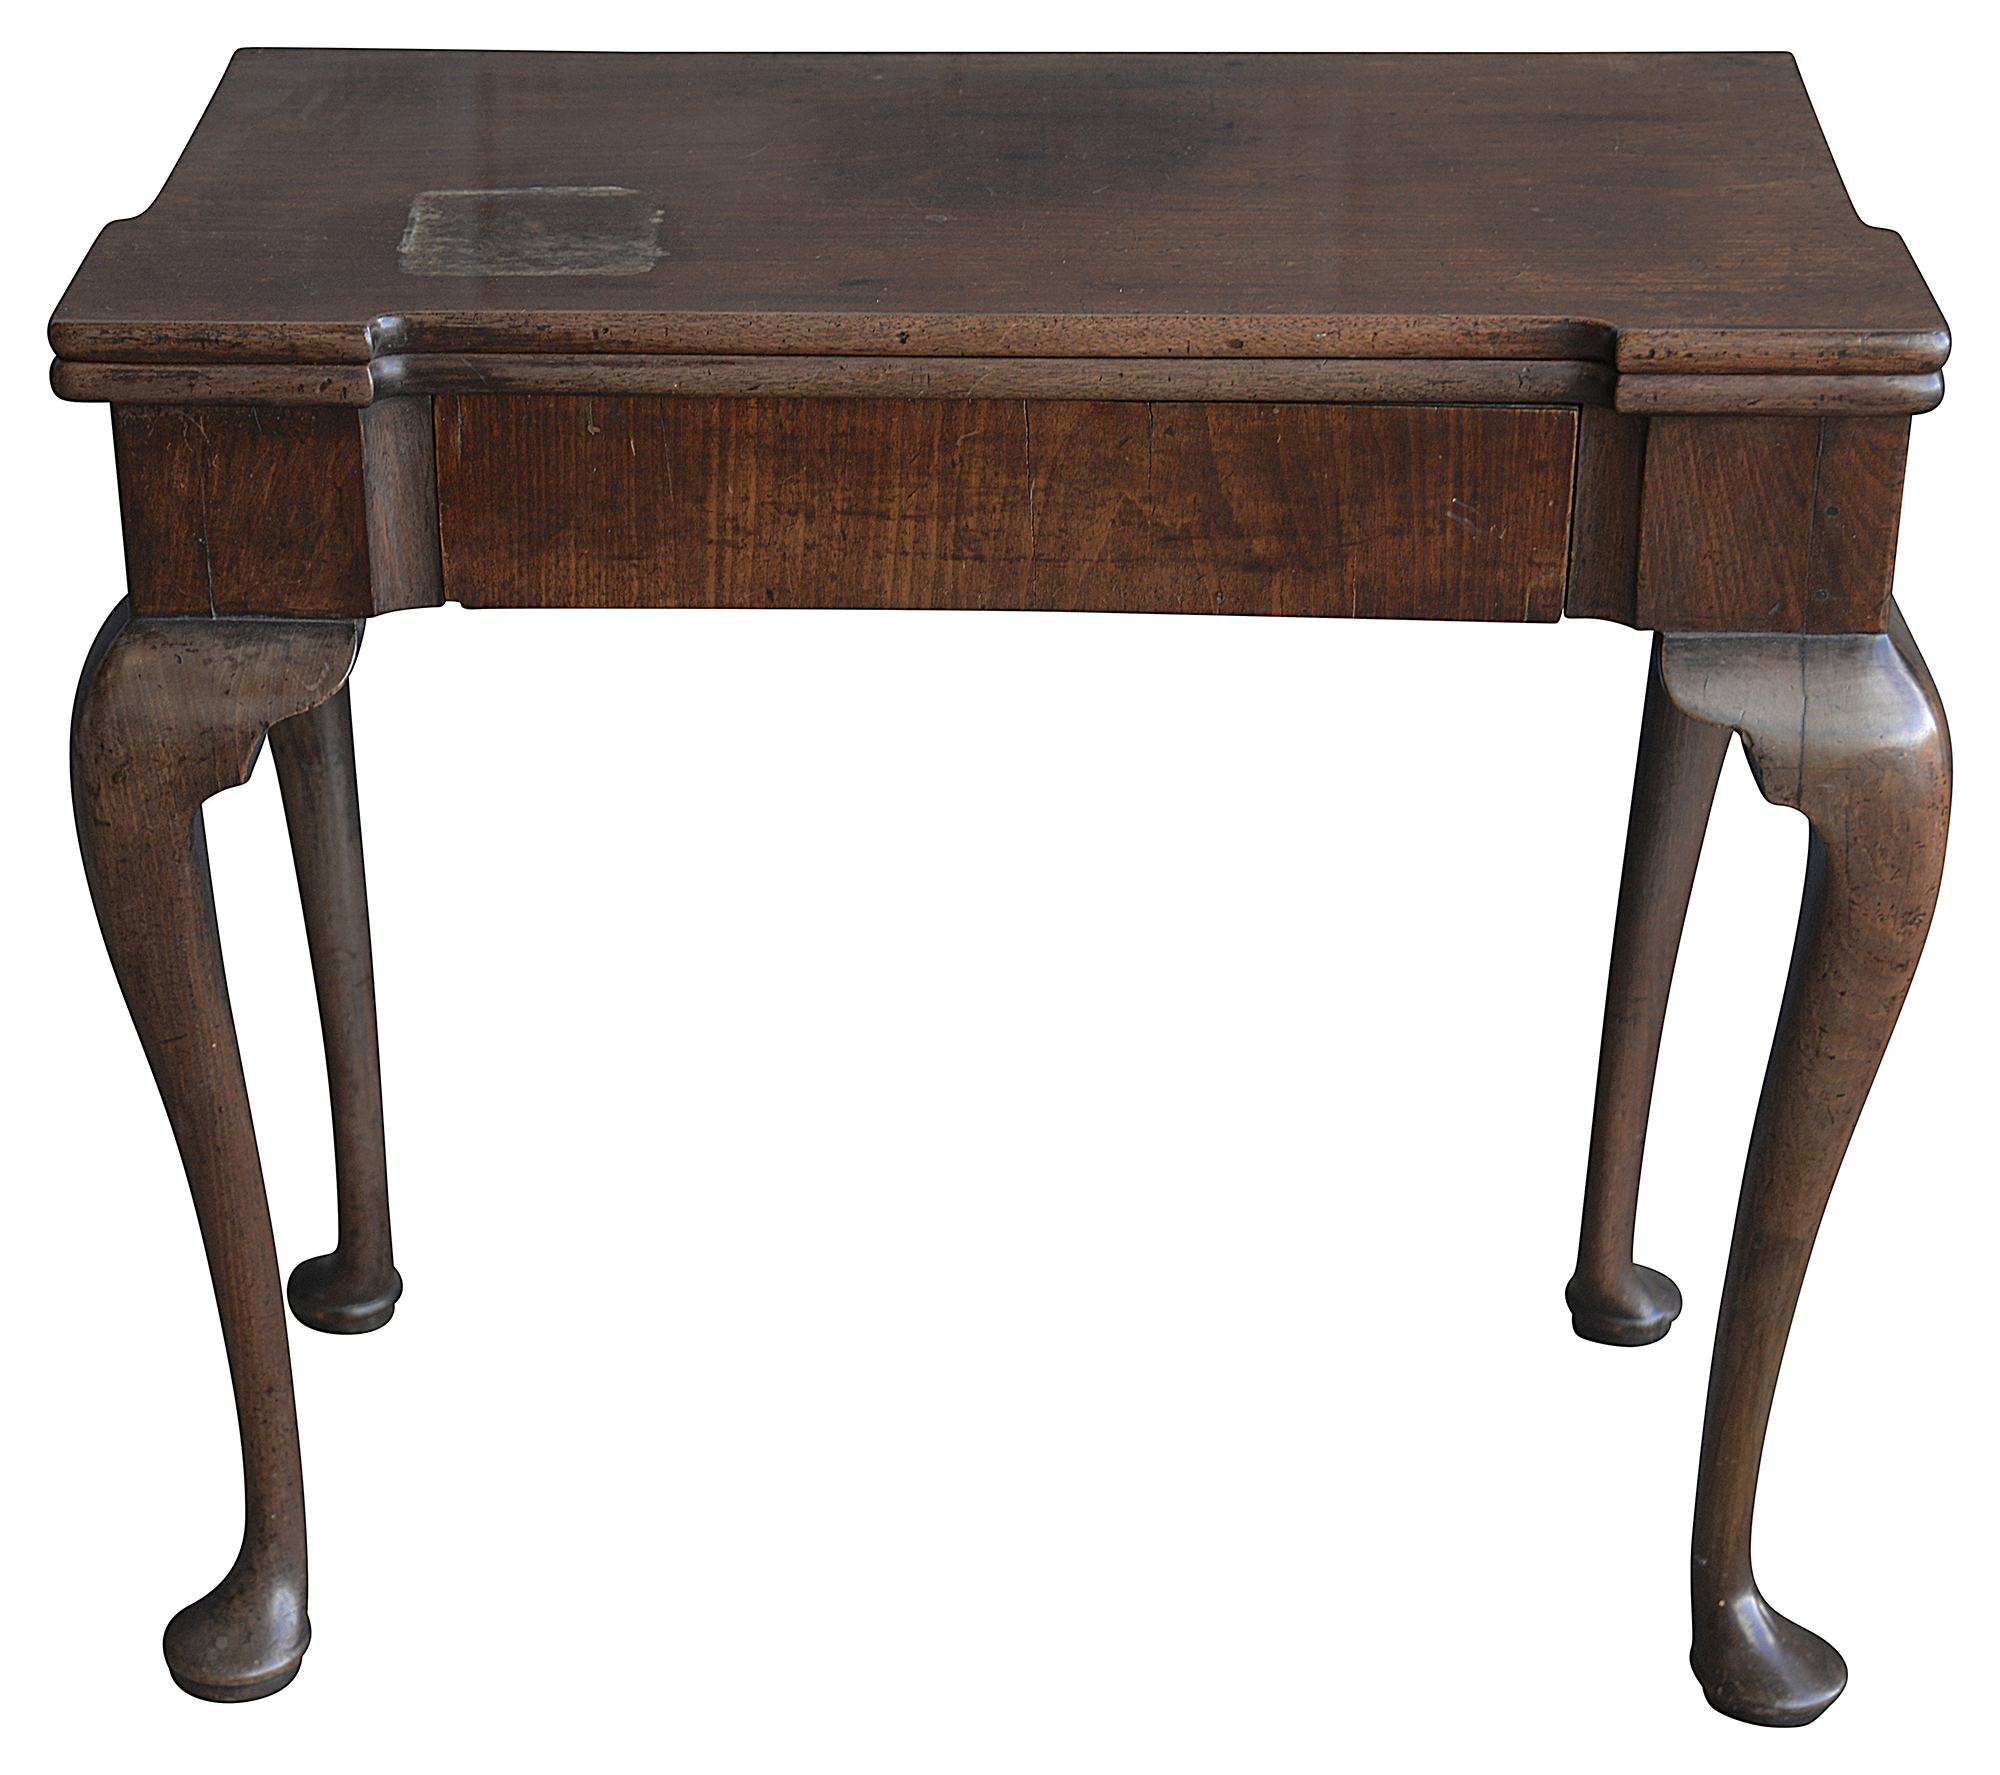 George II walnut foldover tea table